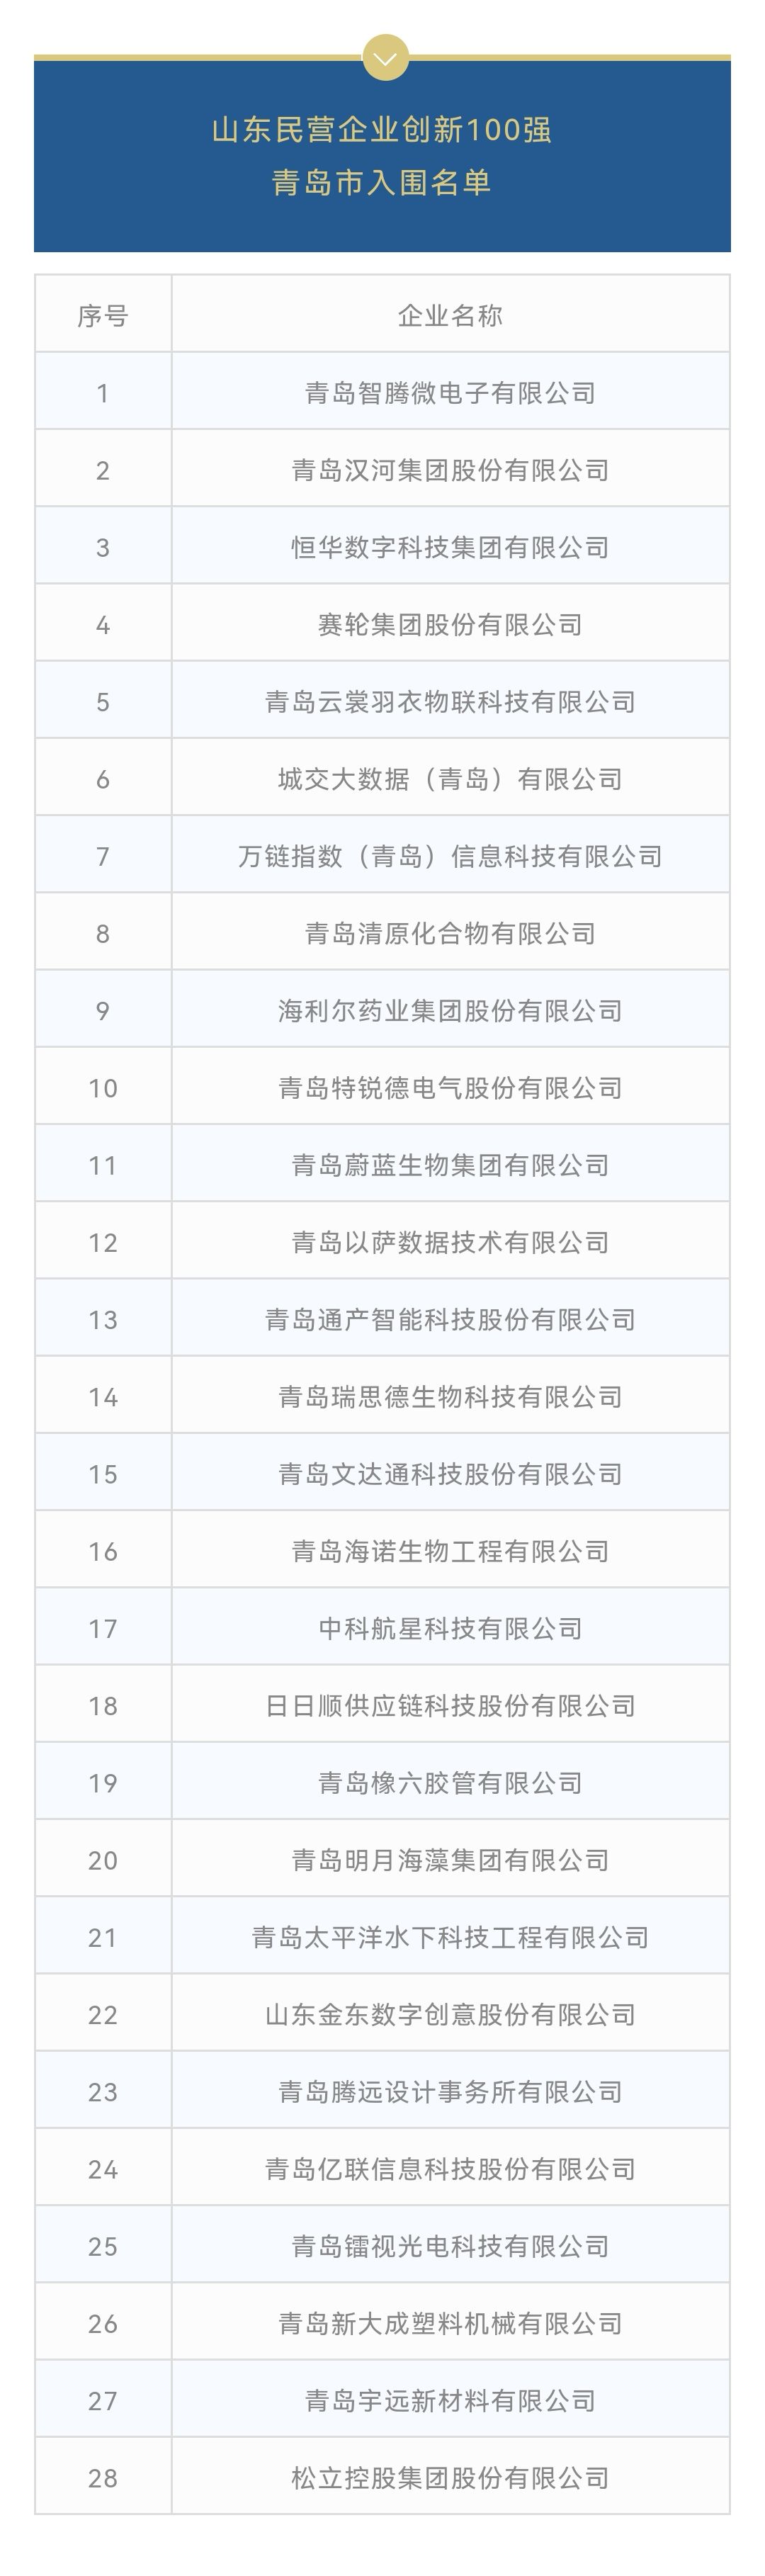 山东综合百强狮扑体育注册企业名单发布 十七家鲁企资产过千亿